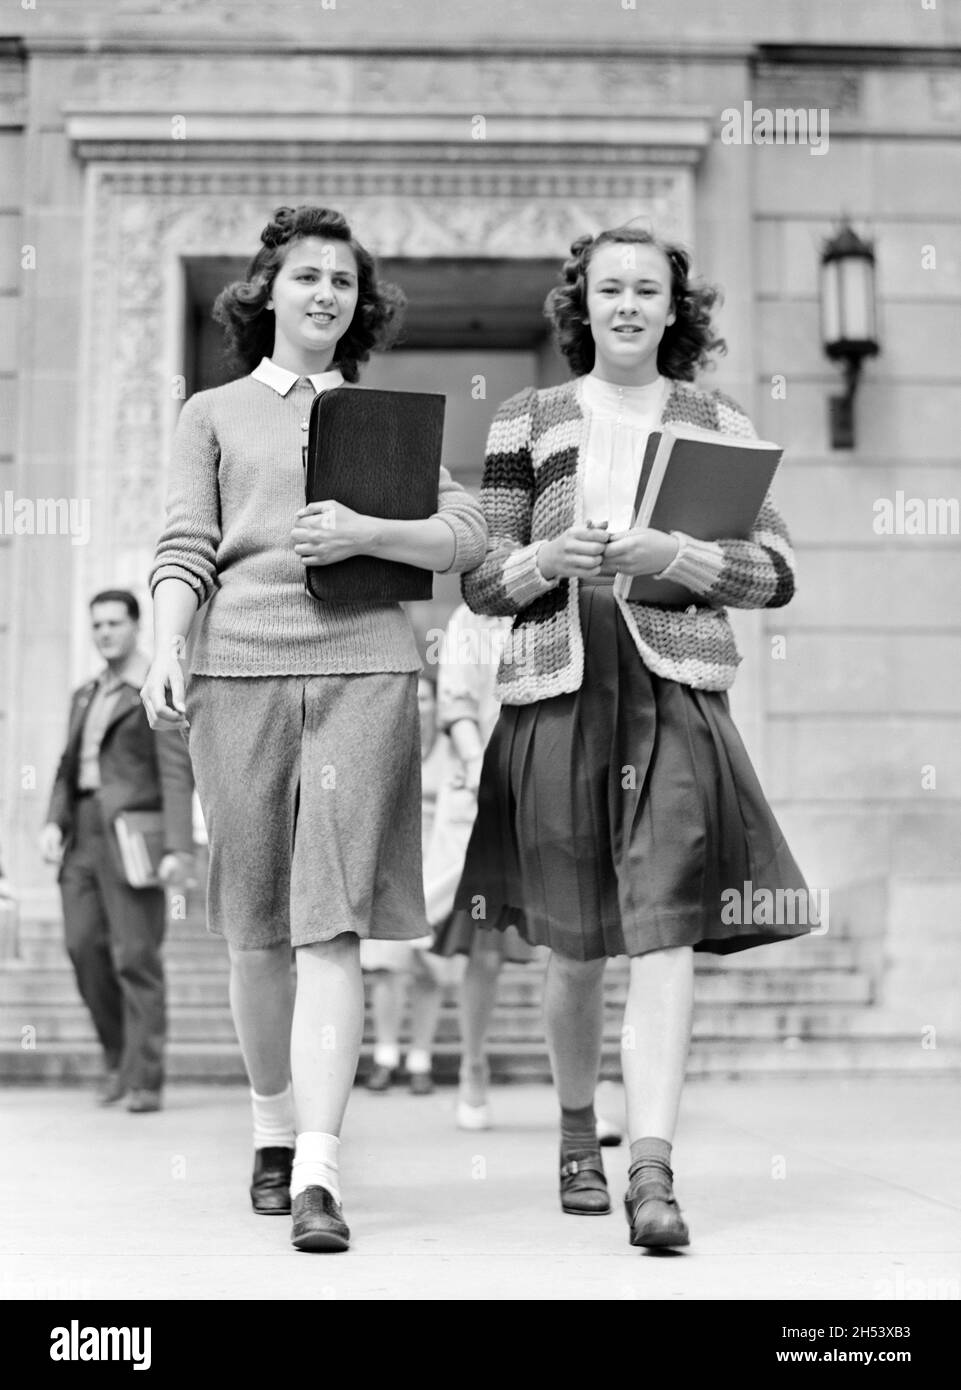 Deux étudiants sortent de la bibliothèque à l'Iowa State College, Ames, Iowa, États-Unis, Jack Delano,U.S. Farm Security Administration, U.S. Office of War information Photograph Collection, mai 1942 Banque D'Images